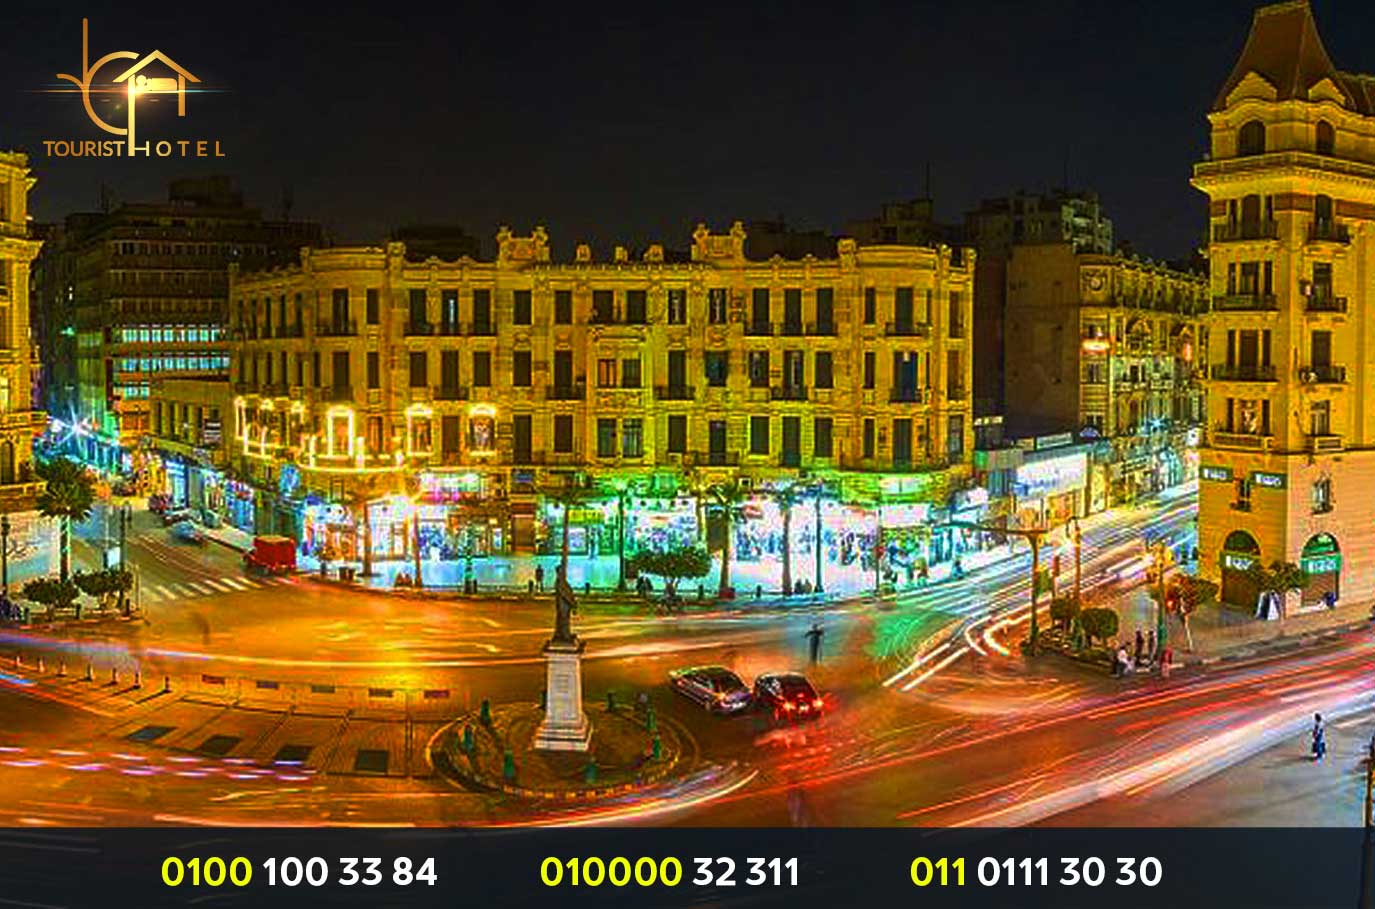 فندق في وسط البلد القاهرة نظيف وسعره معقول - فندق نظيف ورخيص في القاهرة